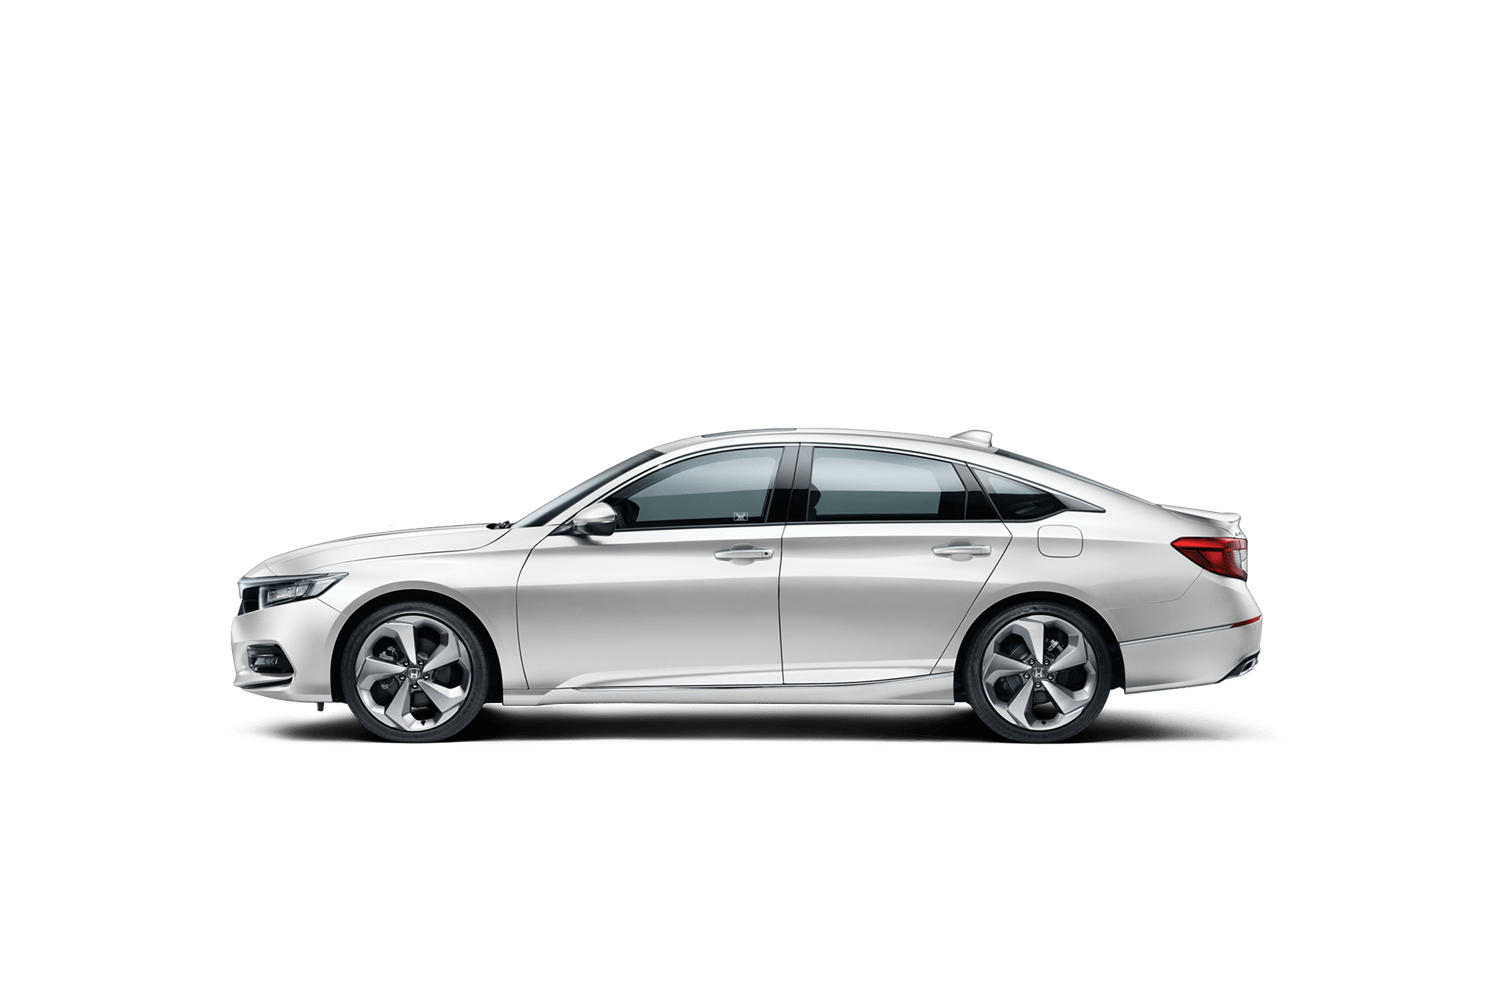 Honda Accord 2021 cũ thông số bảng giá xe trả góp